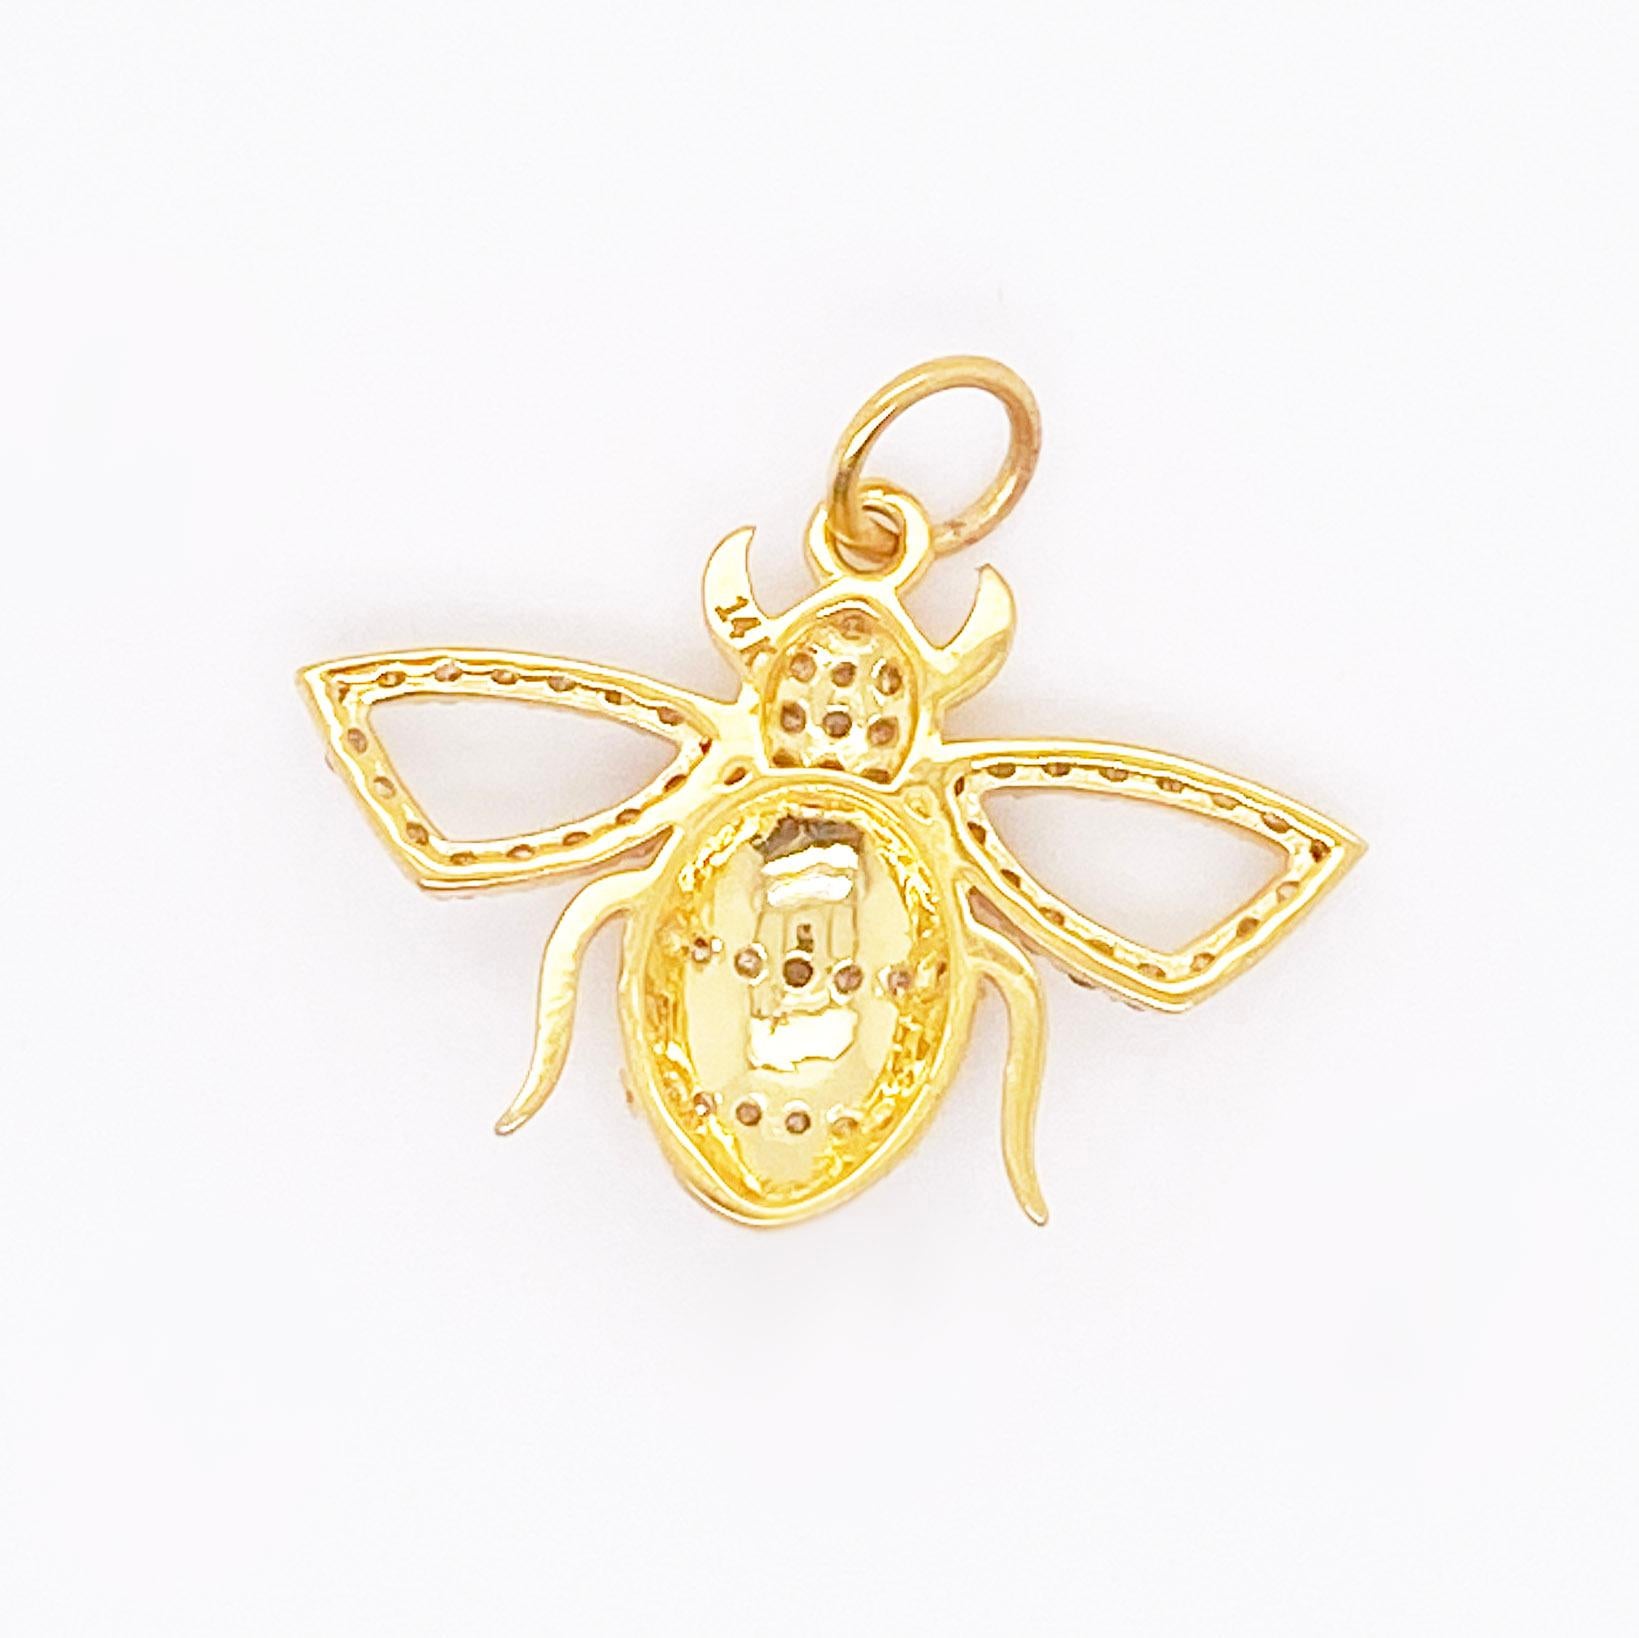 Contemporain Pendentif abeille en or jaune avec diamants et breloque bourdon en pavé de diamants de 0,37 carat